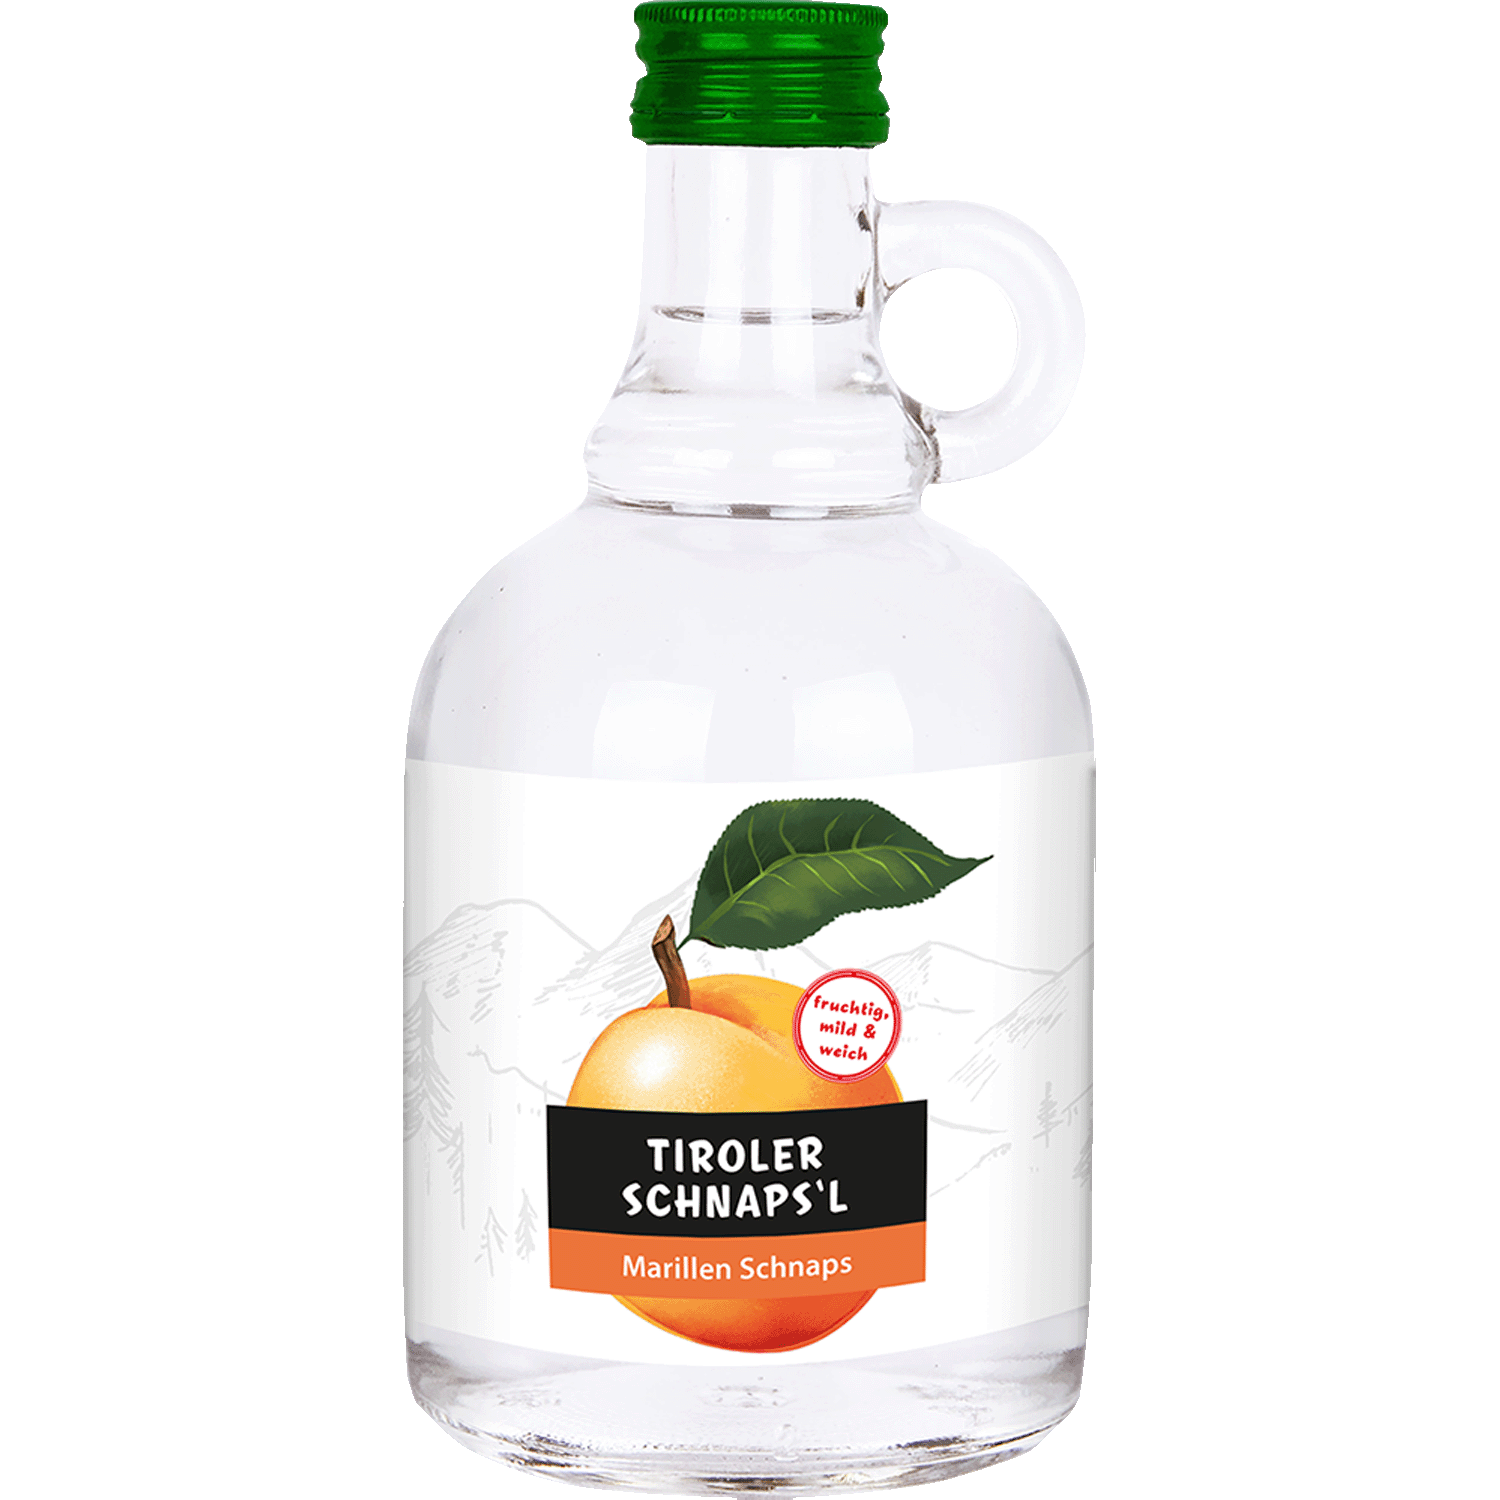 Apricot Schnapps Krügerl in 500ml bottle from Alpenländische Spezialitäten